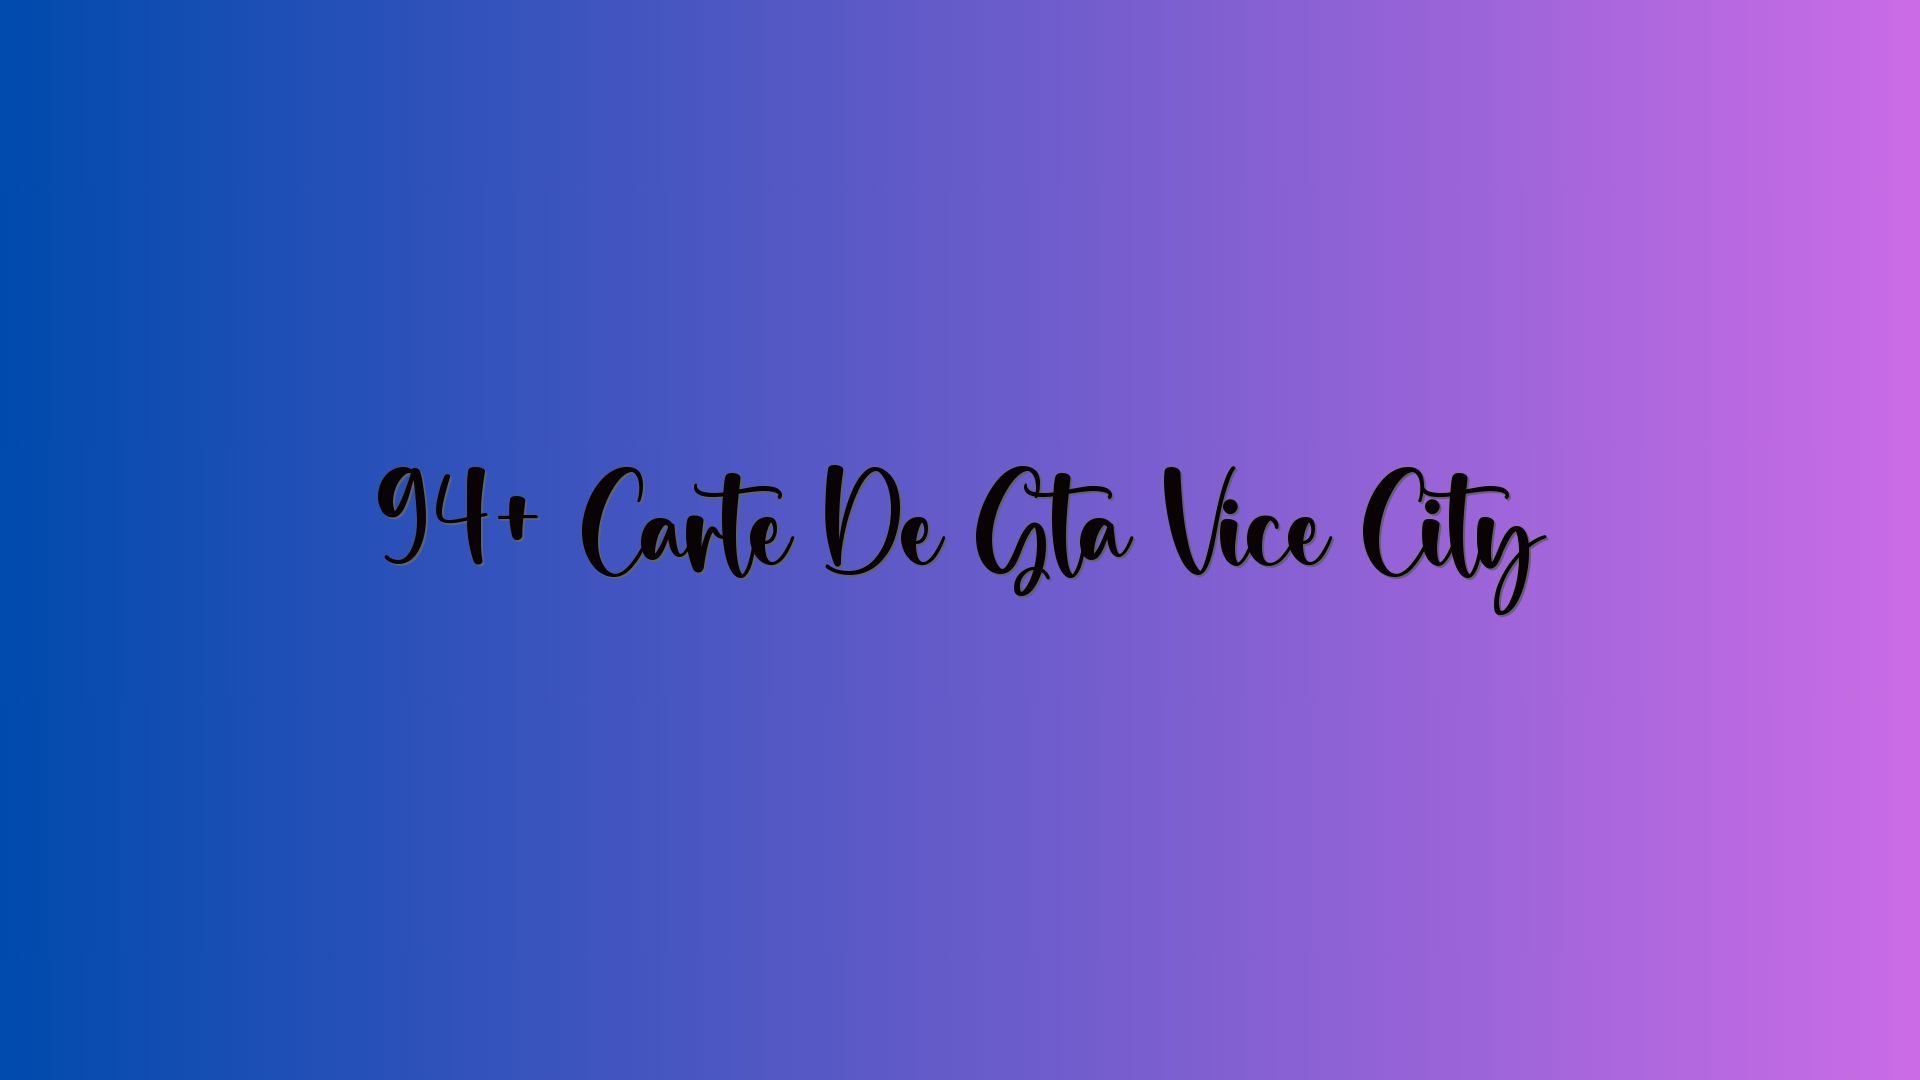 94+ Carte De Gta Vice City